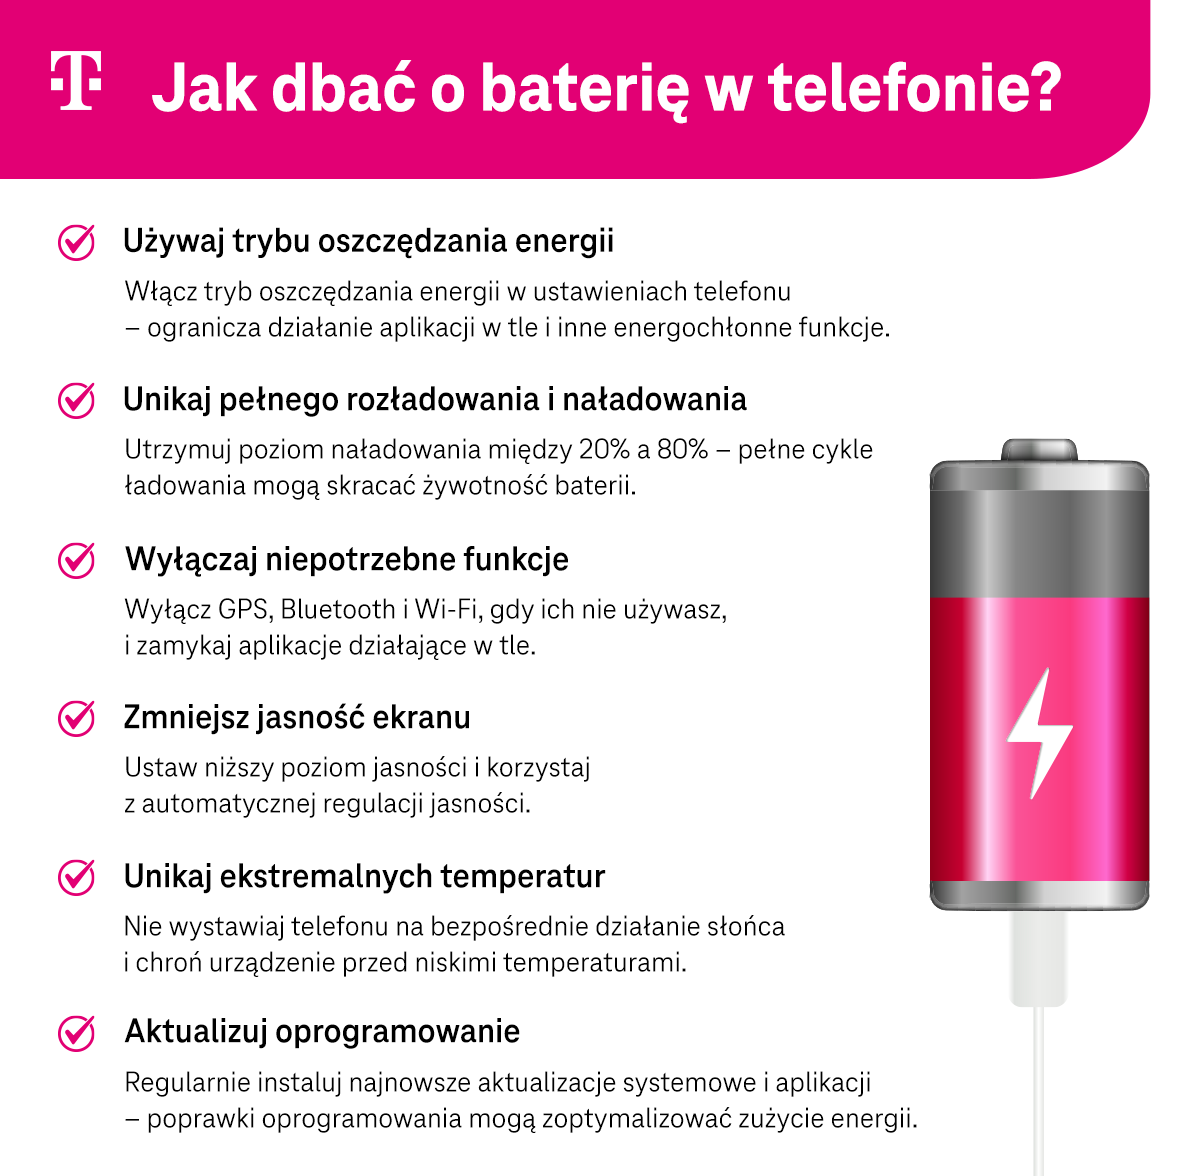 Jak dbać o baterię w telefonie? - infografika